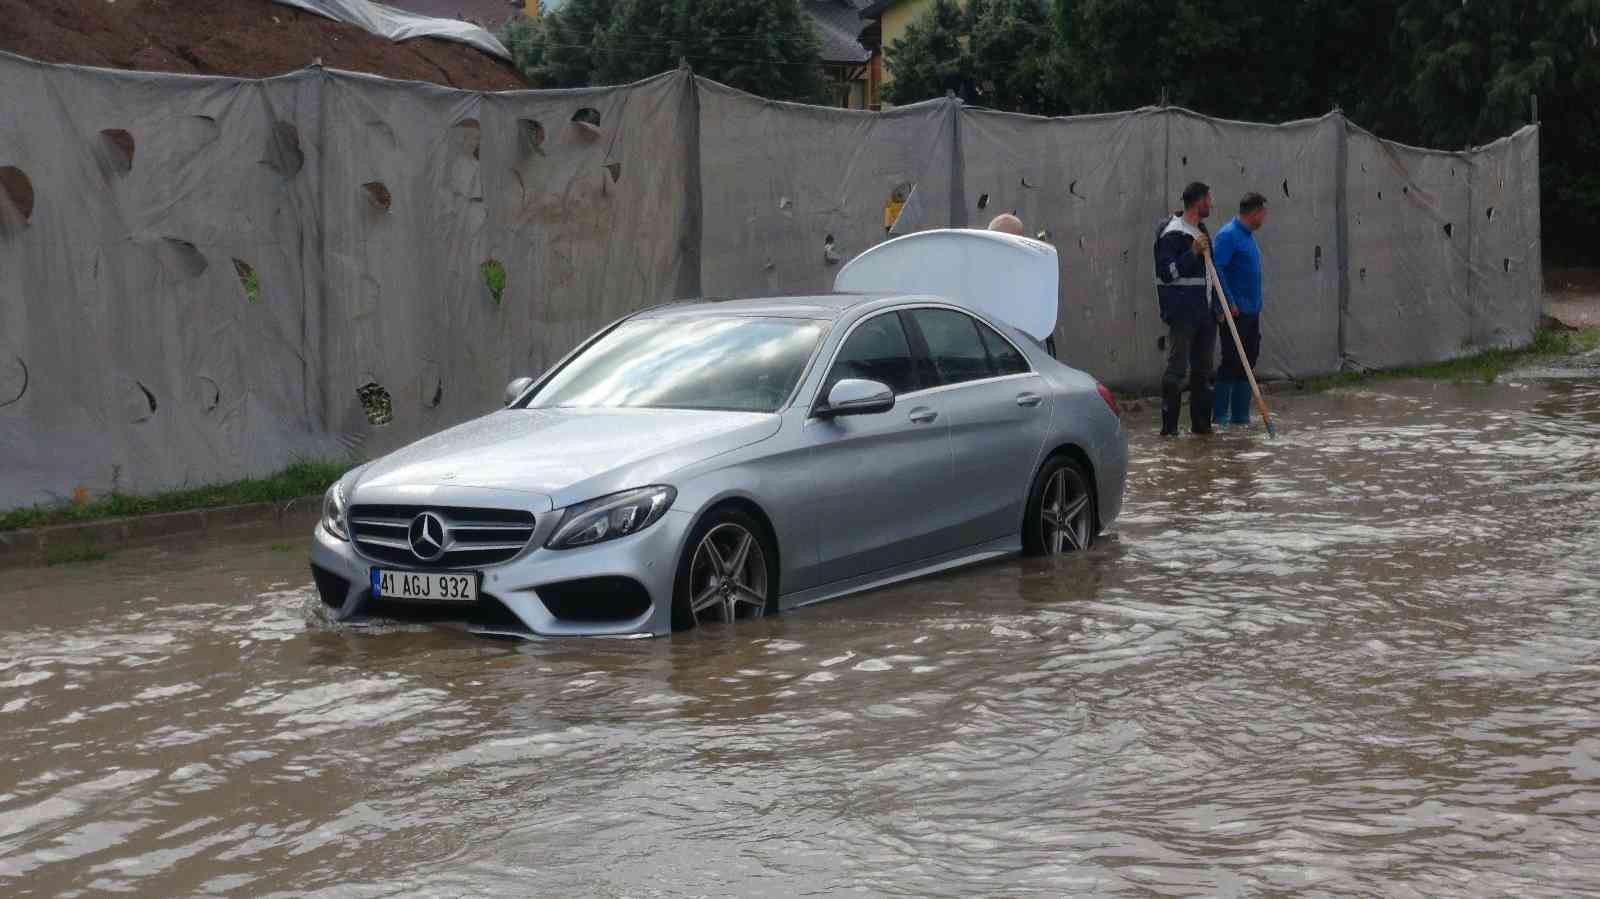 Cadde yağmur suyuyla doldu, milyonluk araç yolda kaldı - 61saat - TRABZON  HABER SAYFASI